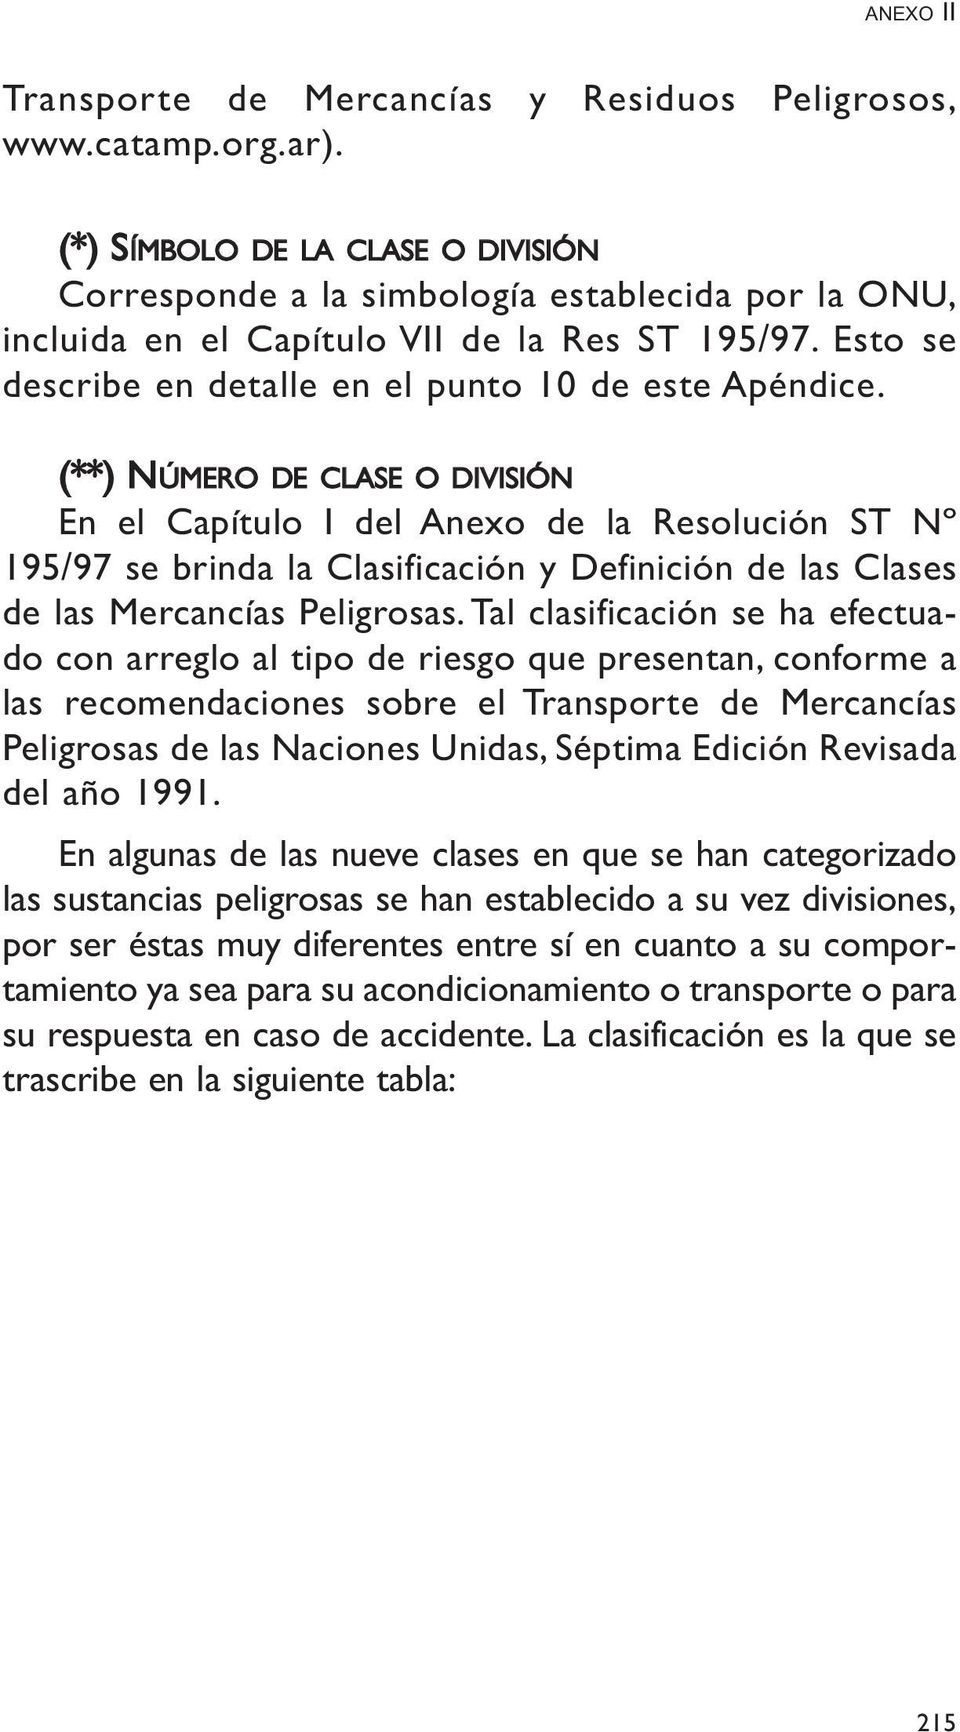 (**) NÚMERO DE CLASE O DIVISIÓN En el Capítulo I del Anexo de la Resolución ST Nº 195/97 se brinda la Clasificación y Definición de las Clases de las Mercancías Peligrosas.